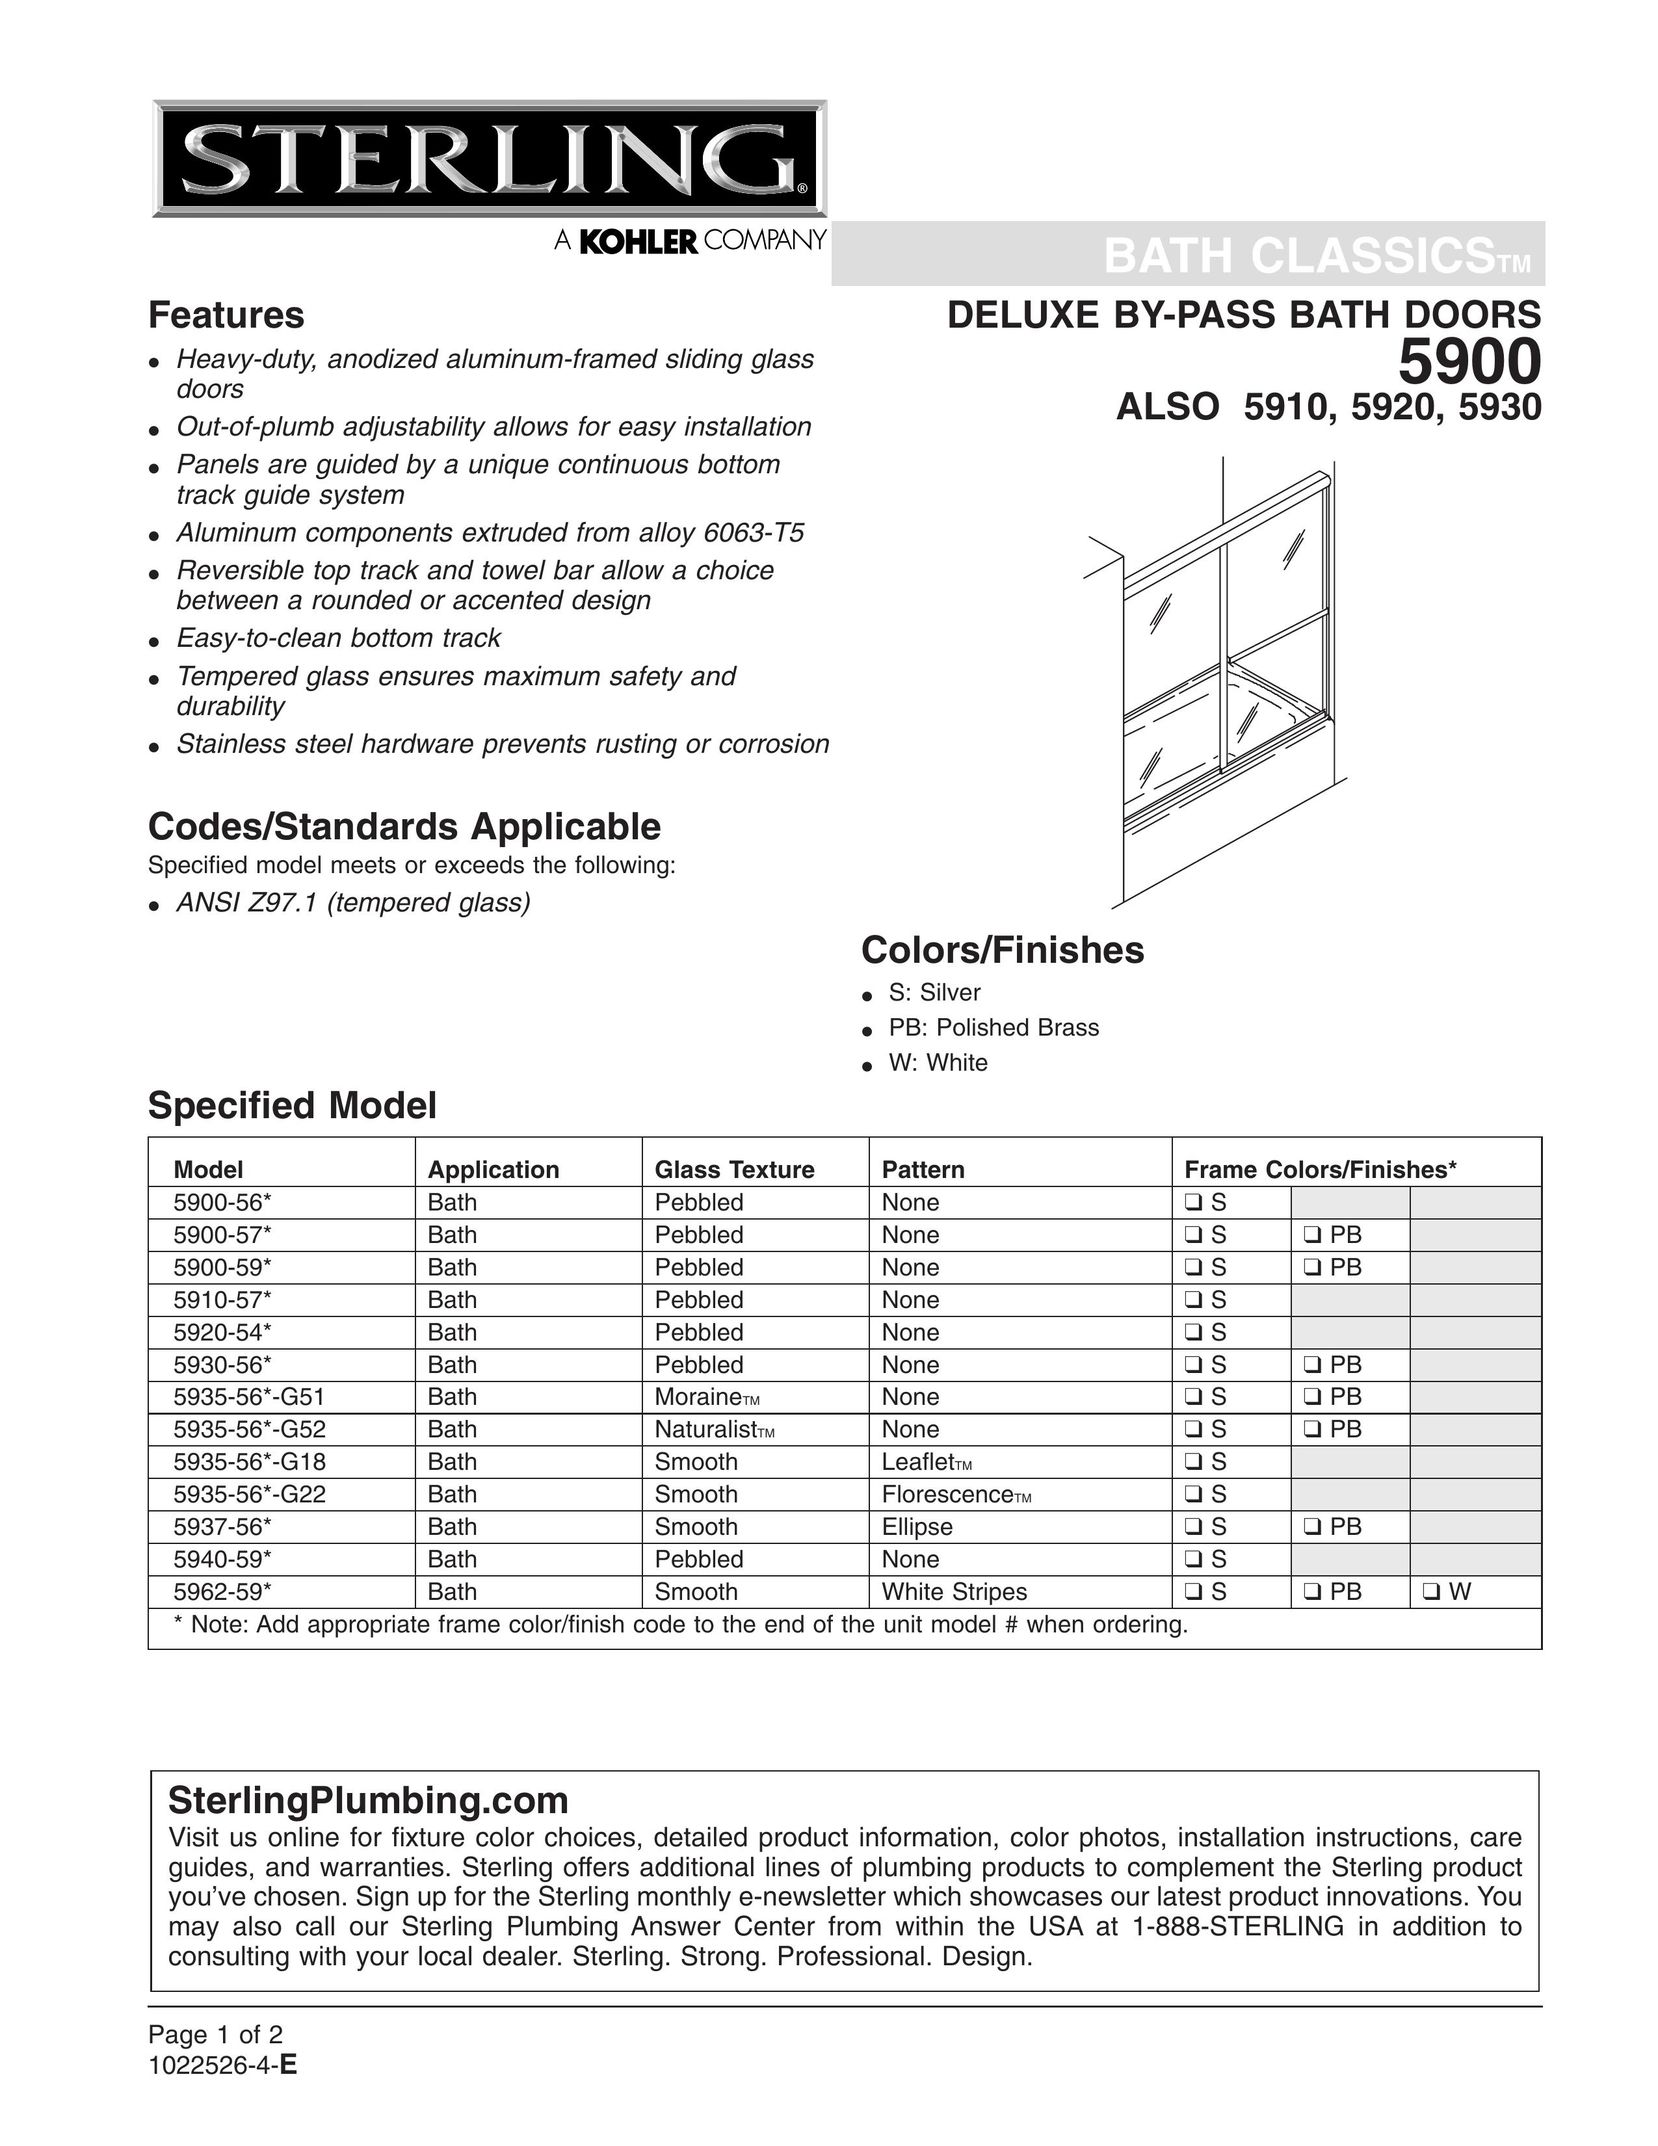 Sterling Plumbing 5935-56*-G22 Door User Manual